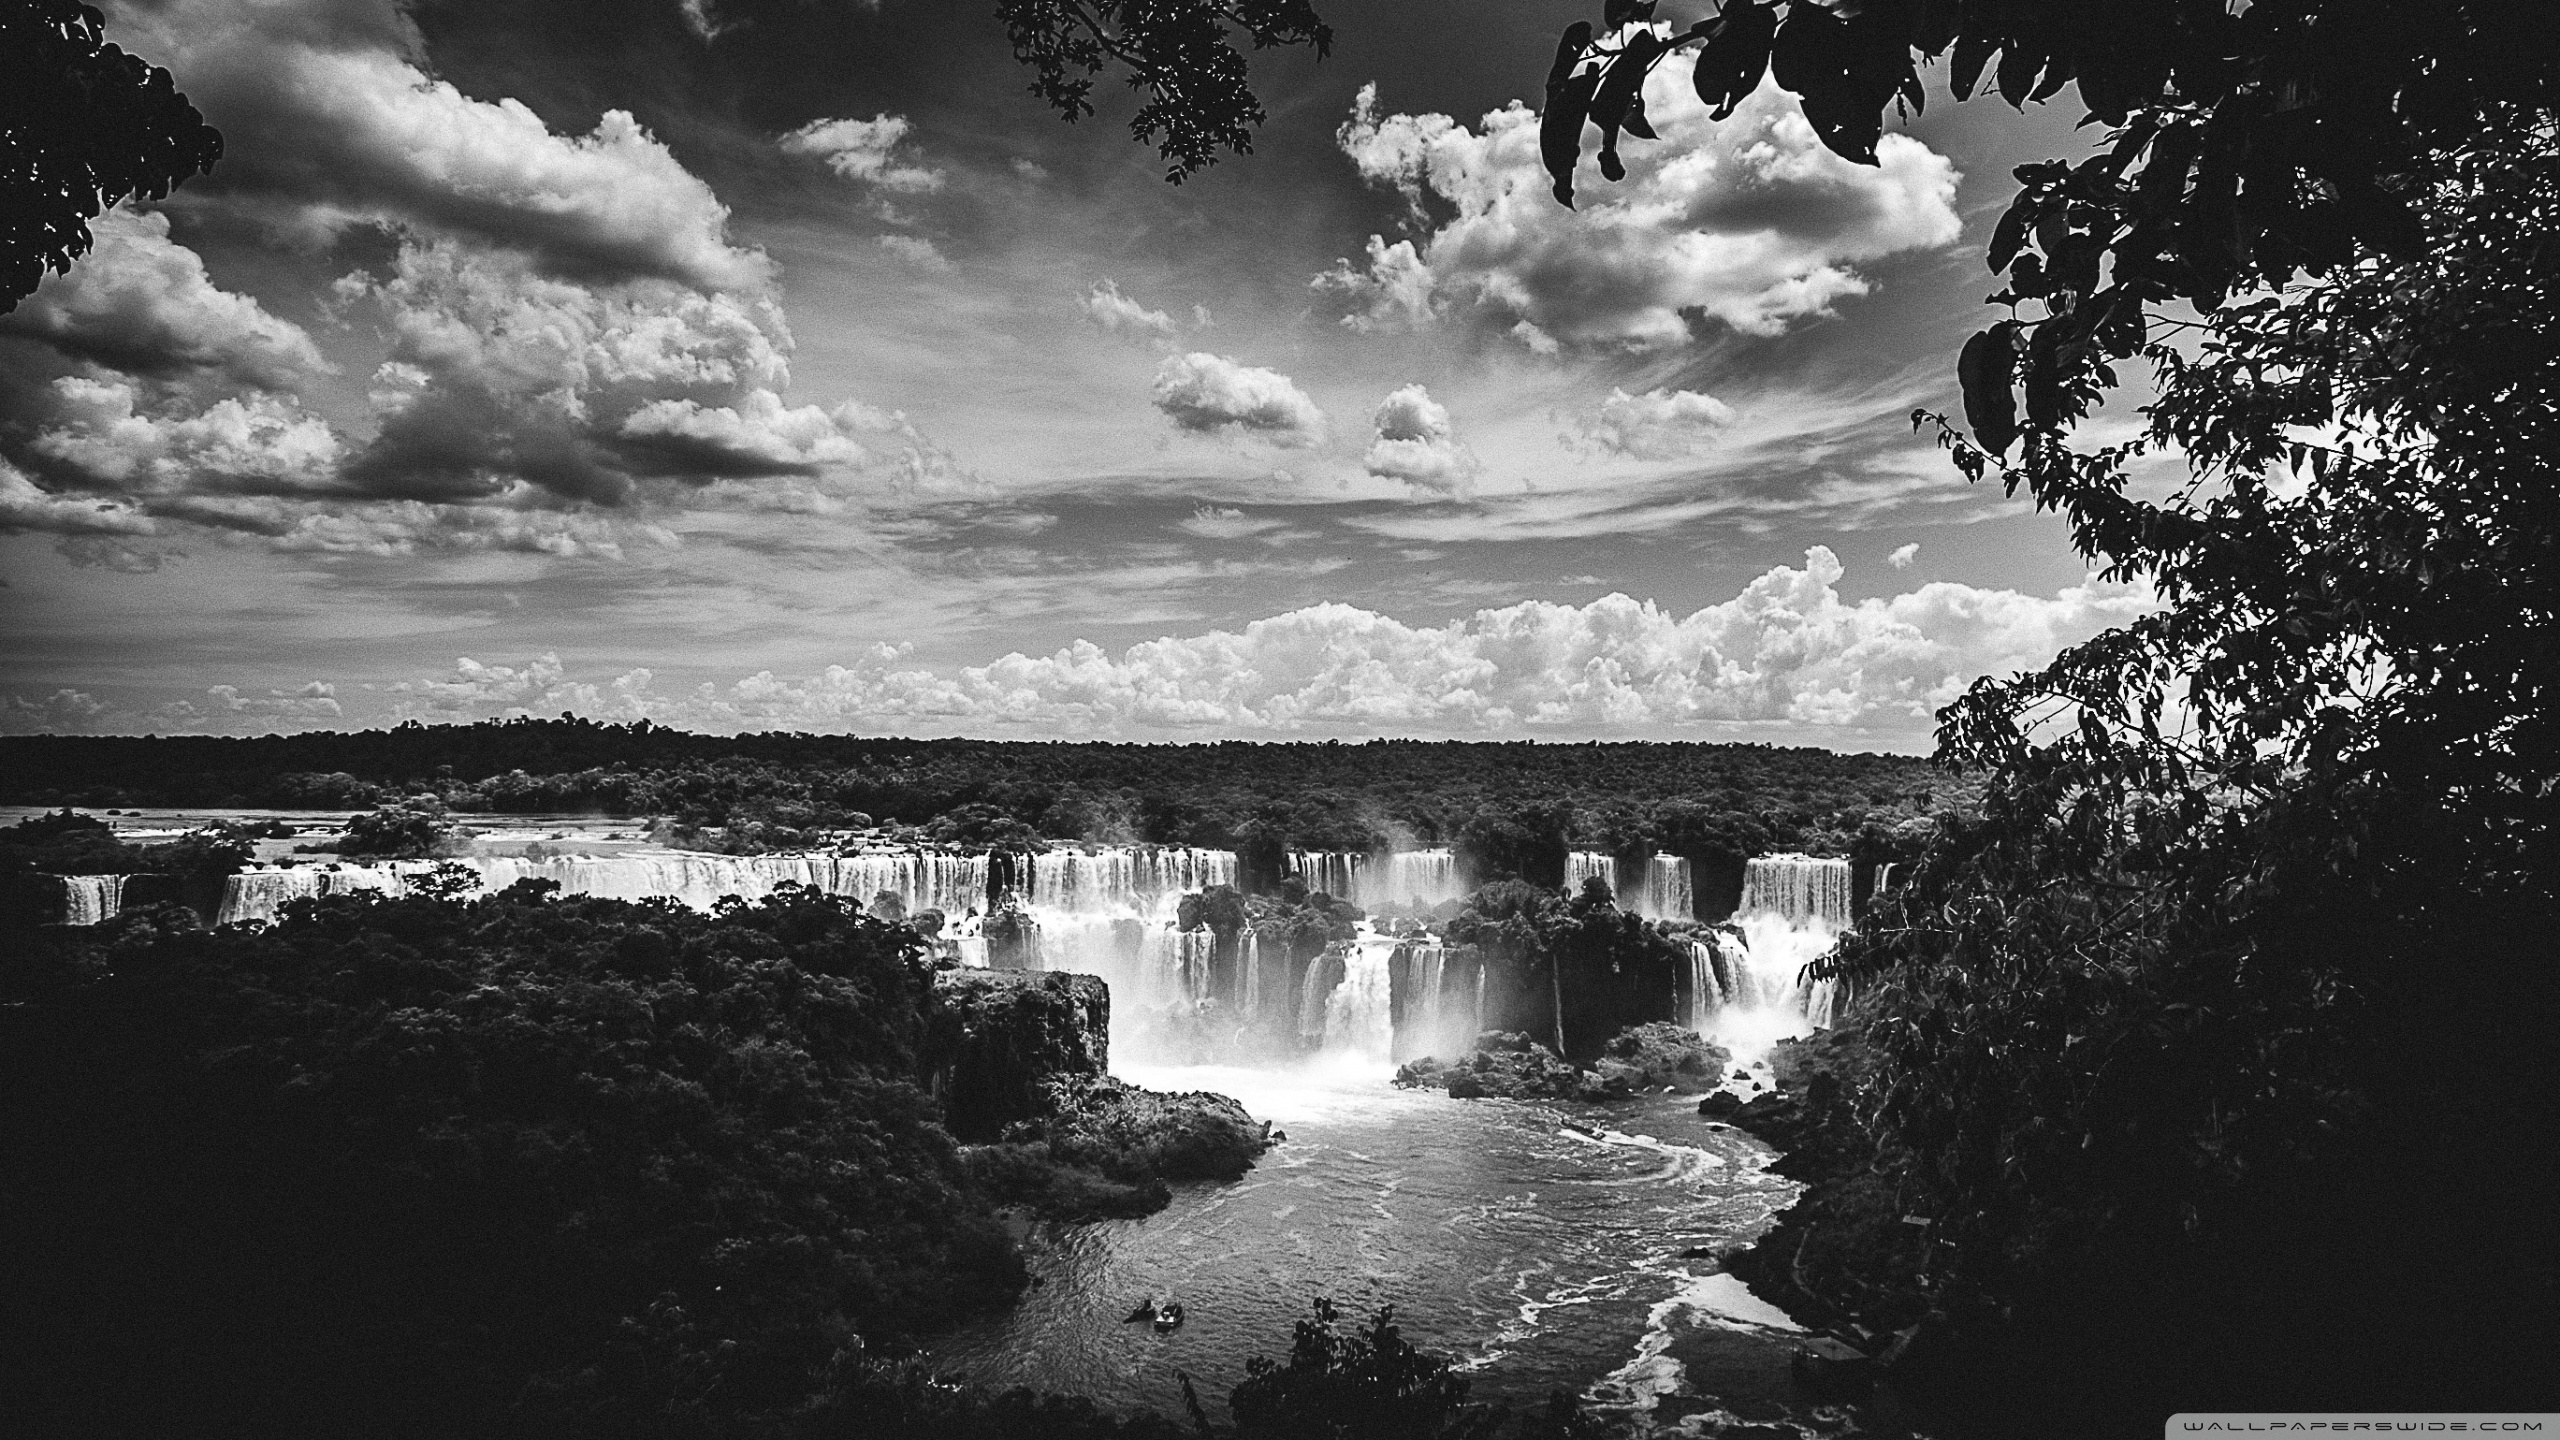 4k Iguazu Falls Wallpaper For Desktop And Mobile Phones - Iguazu Falls - HD Wallpaper 